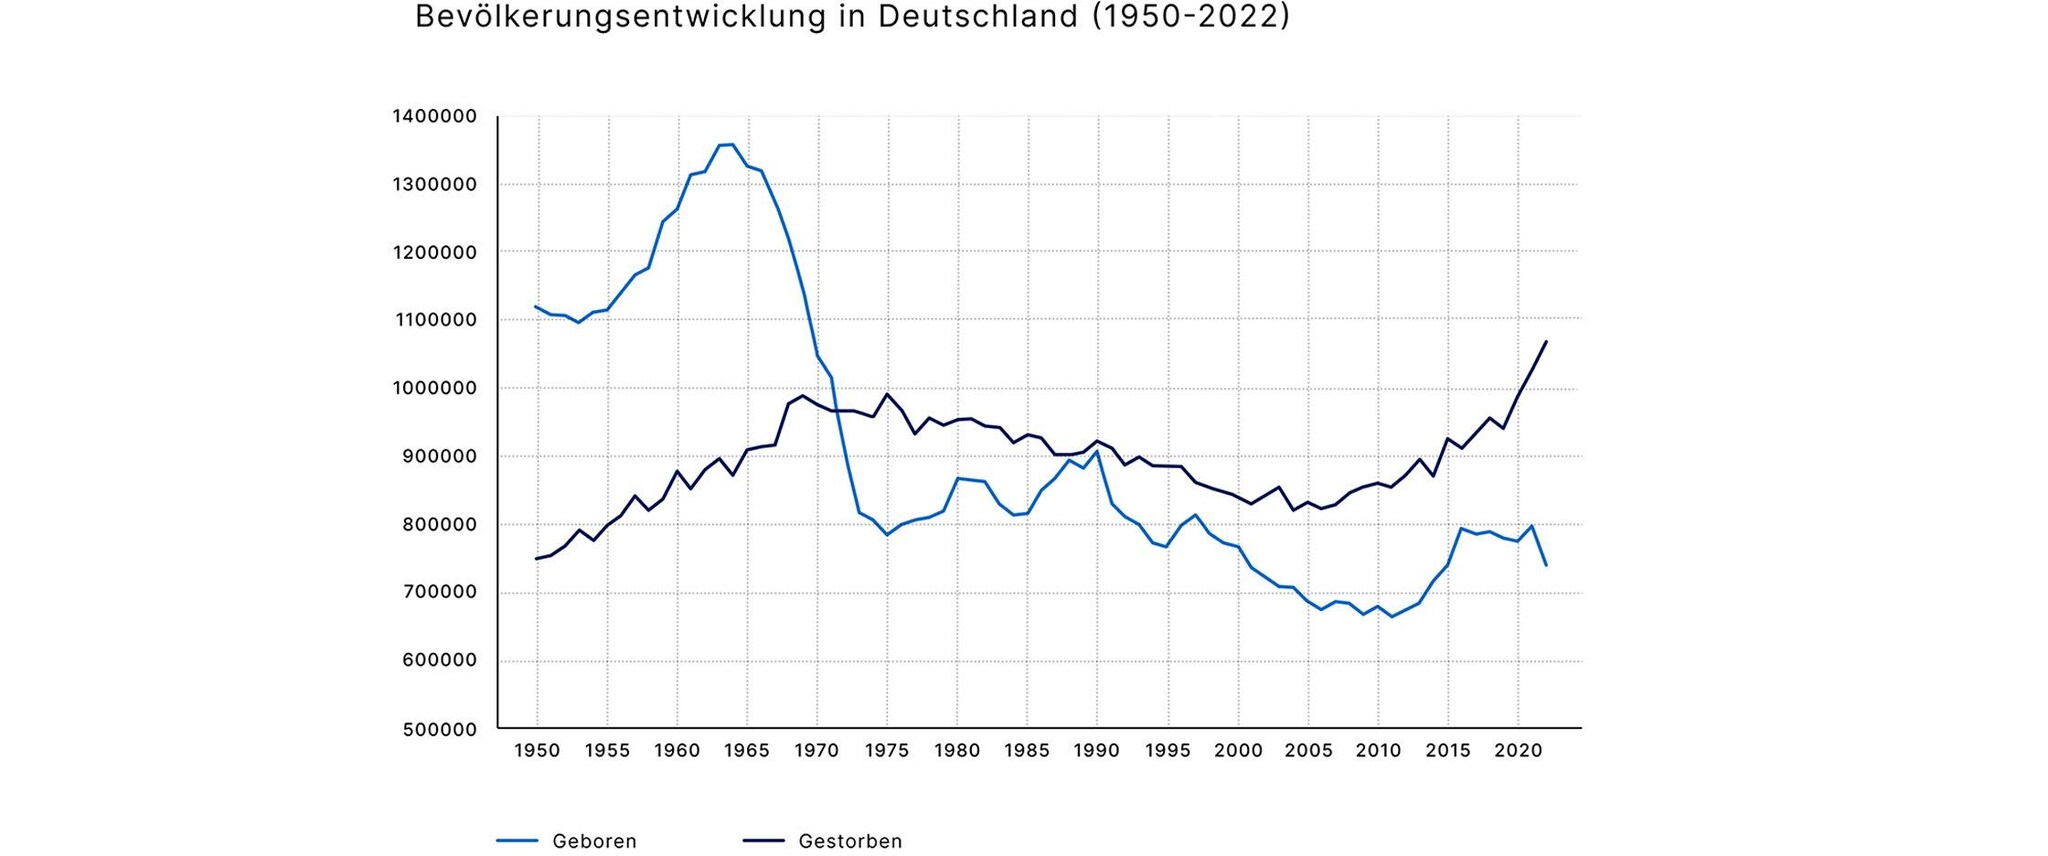 Bevölkerungsentwicklung in Deutschland (1950-2022)